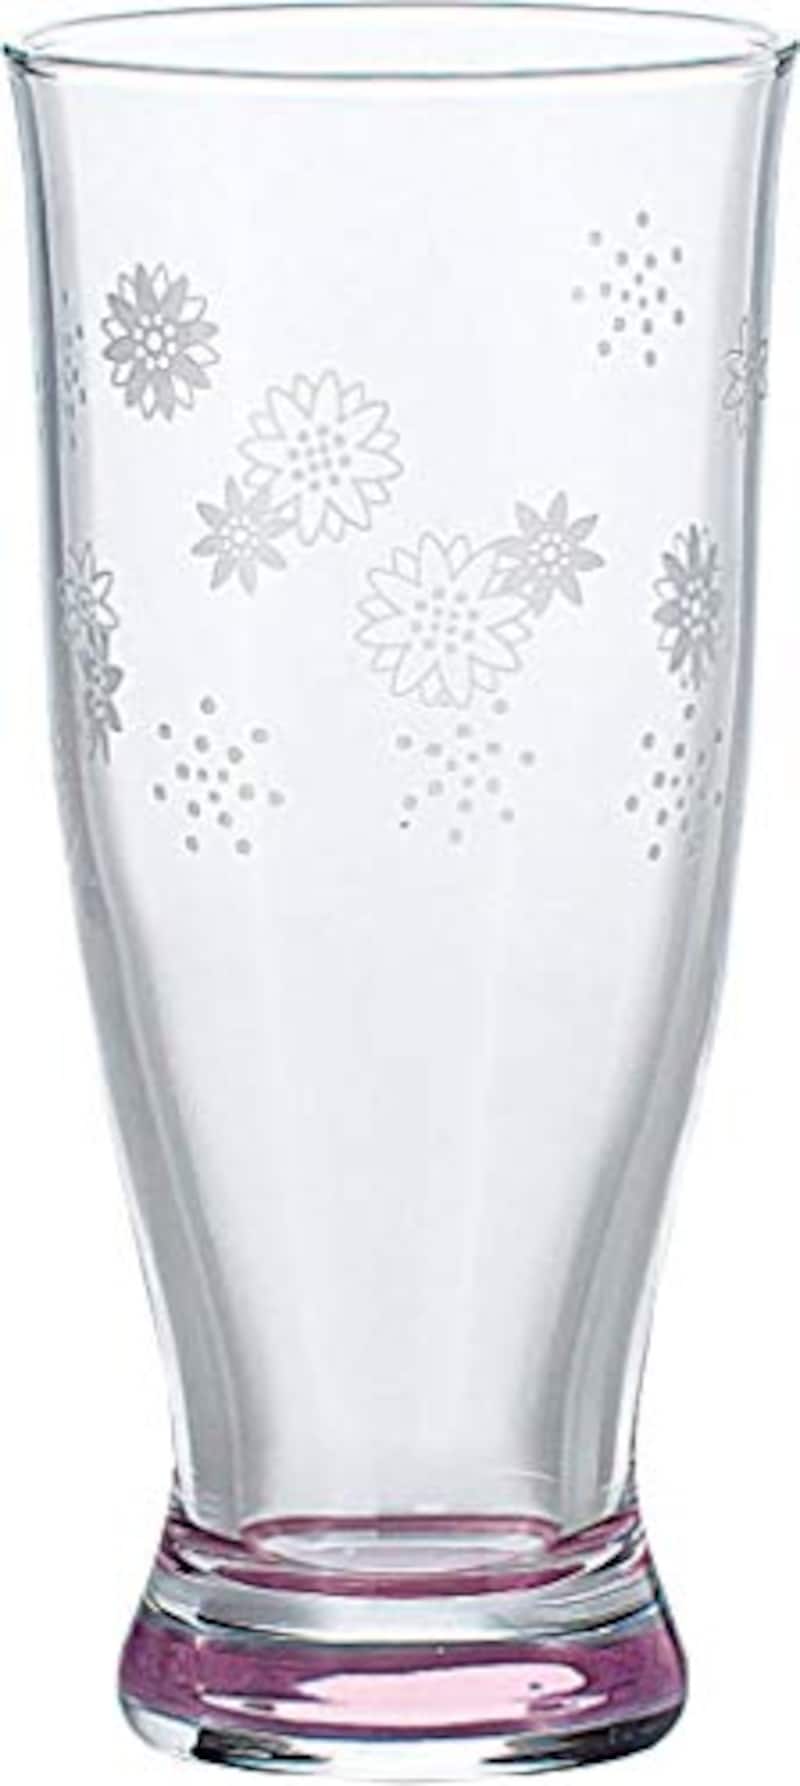 東洋佐々木ガラス,じぶん時間 ビールグラス,B-14110-J235